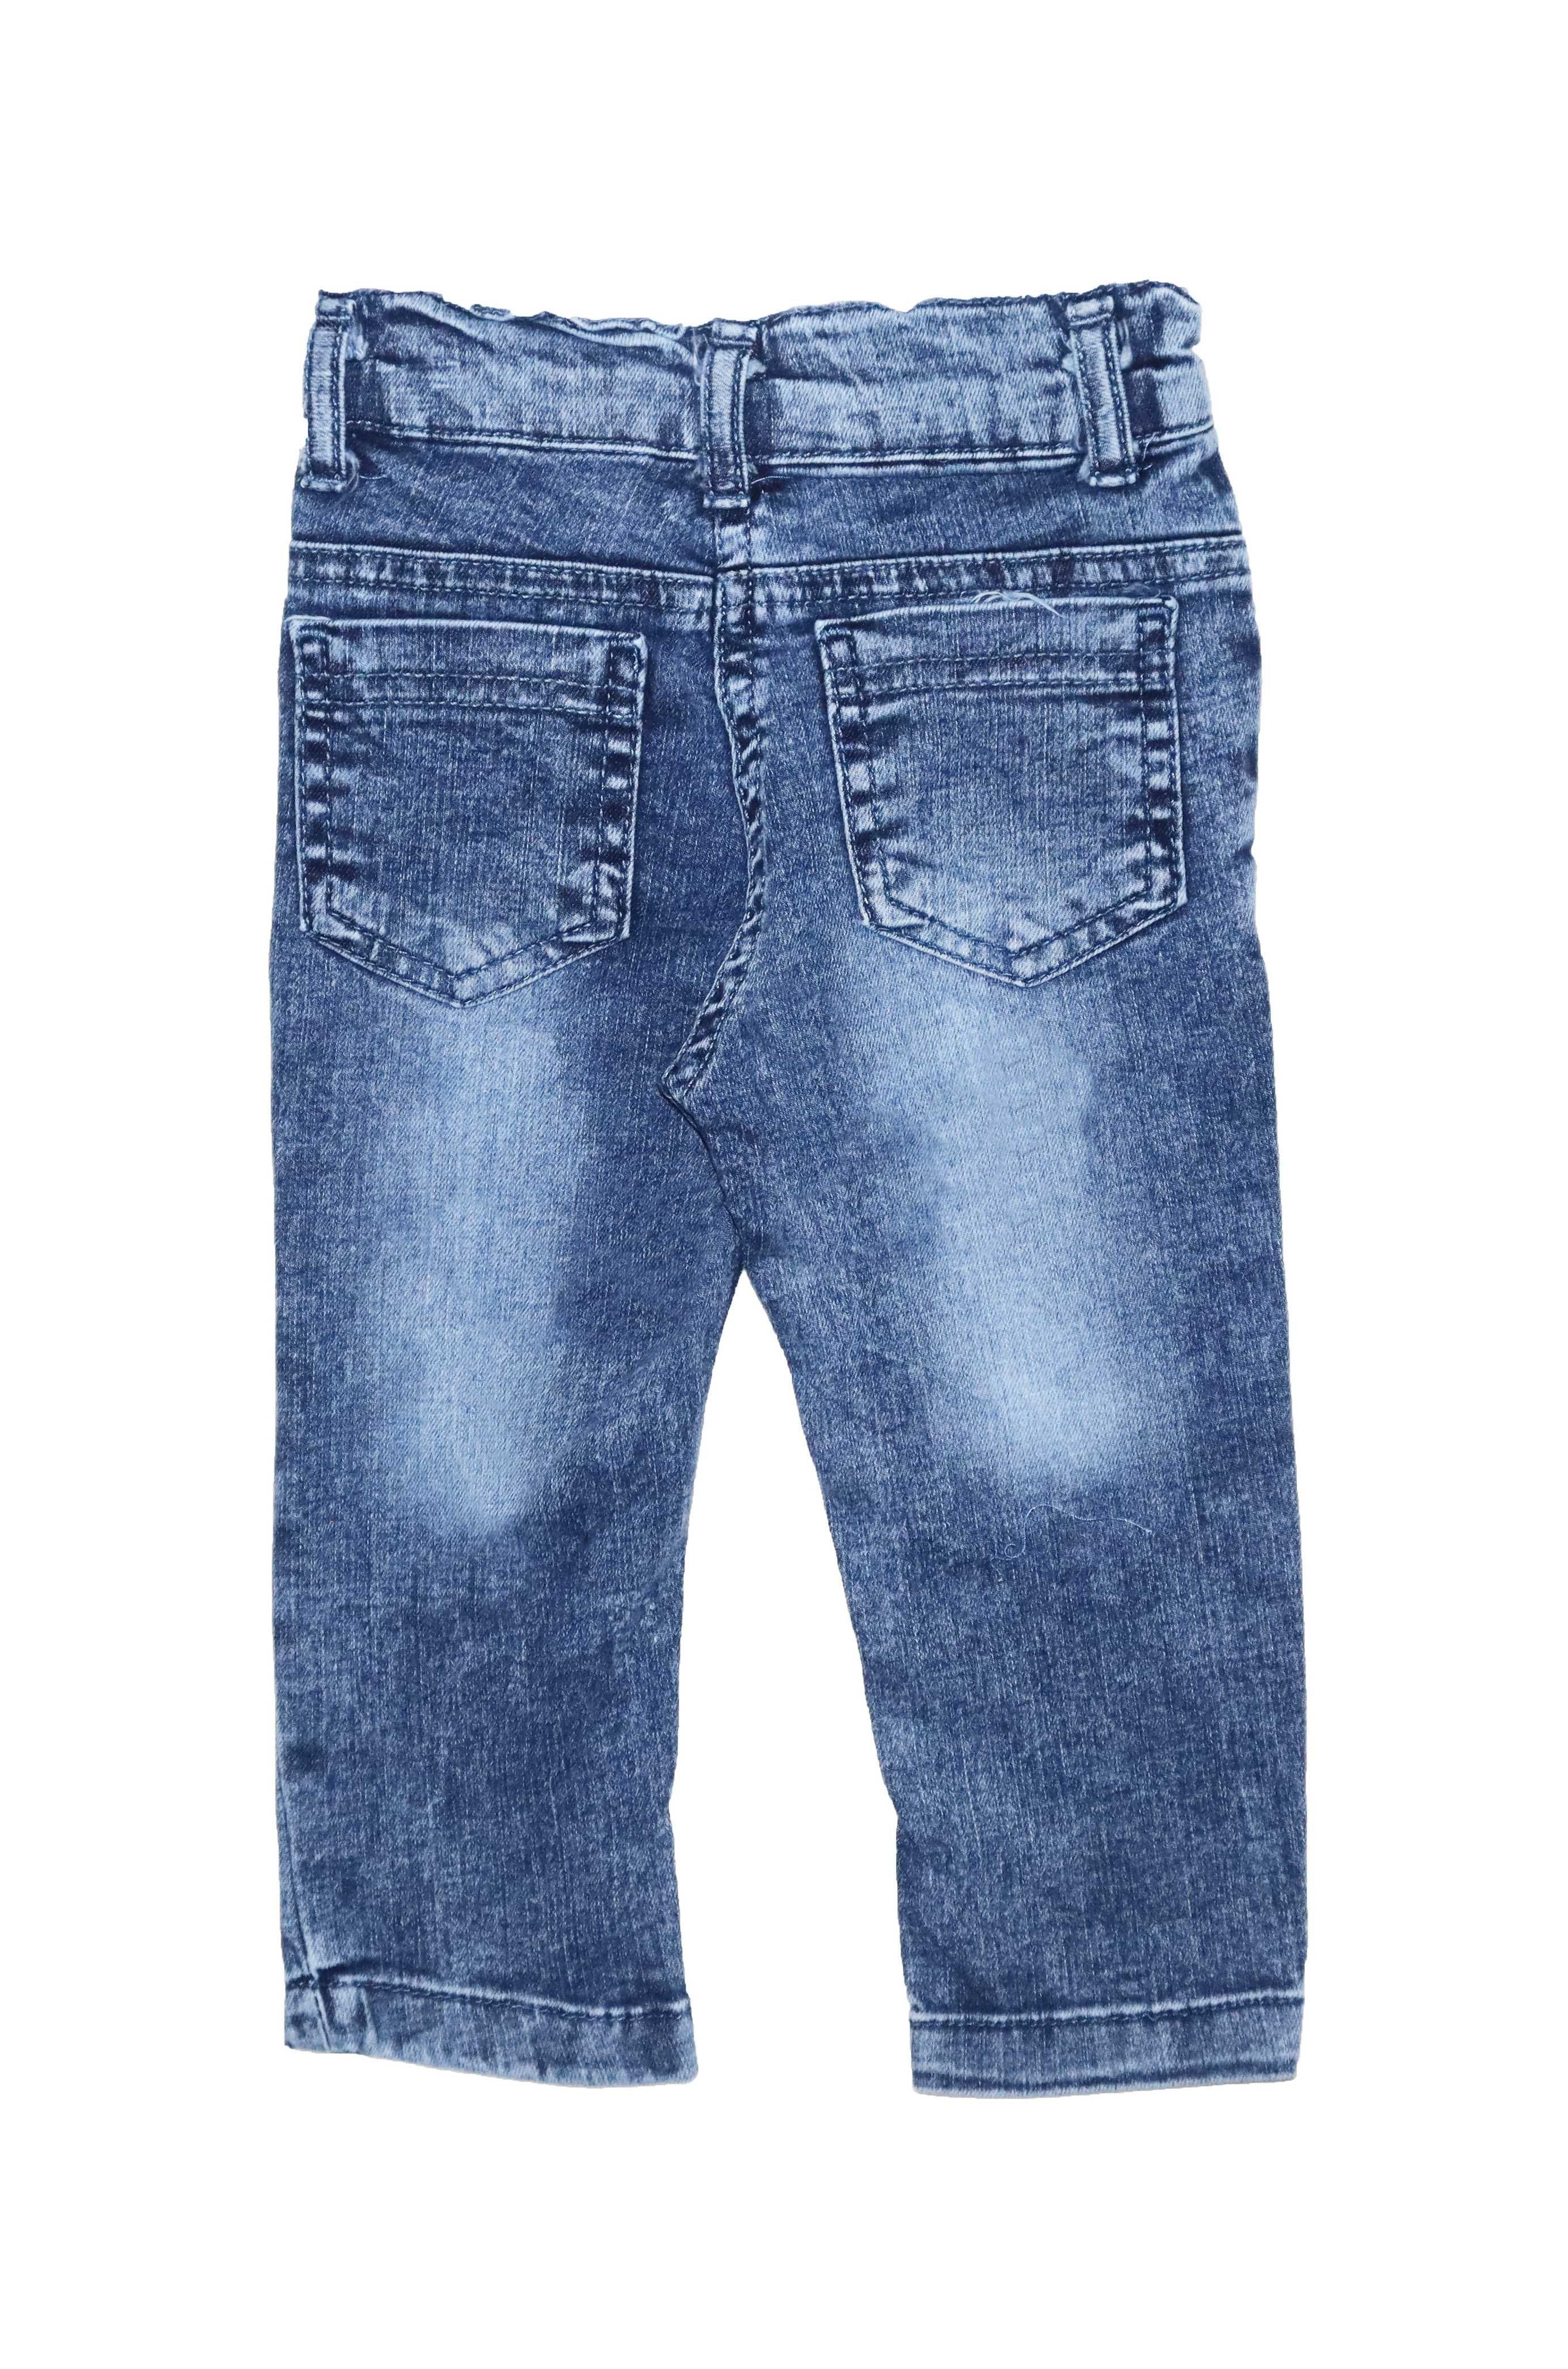 Spodnie jeansowe dla dziewczynki jeansy dziewczęce jeansy dziecięce 86